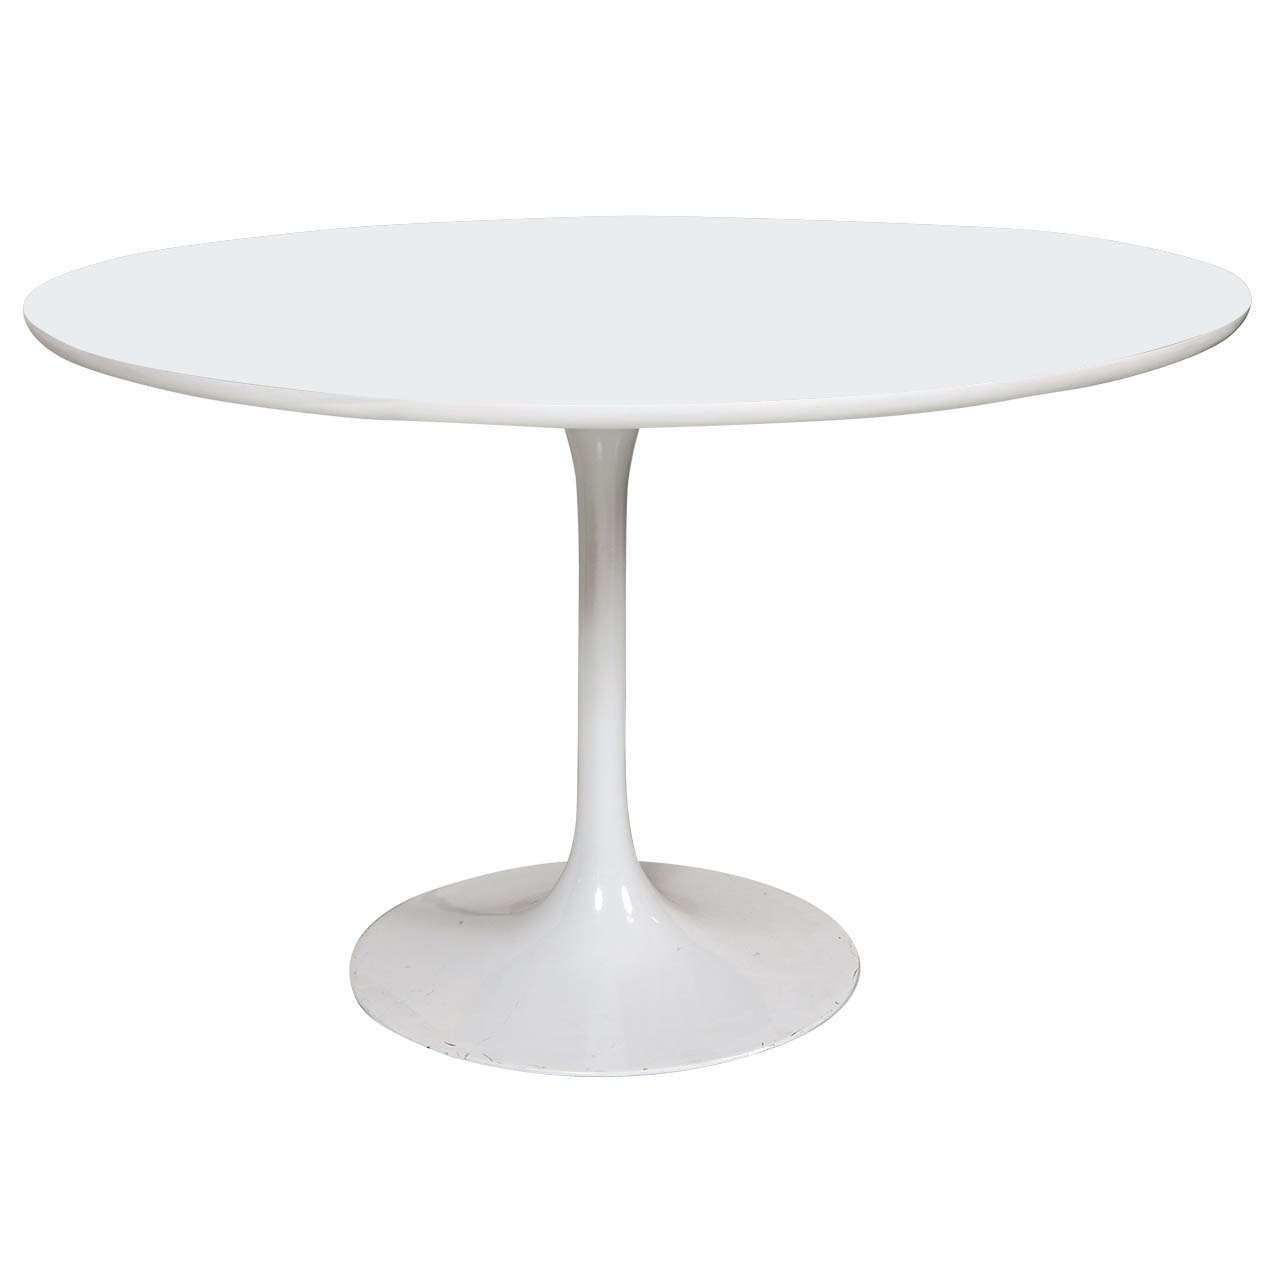 Eero Saarinen Mid-Century White Pedestal Table